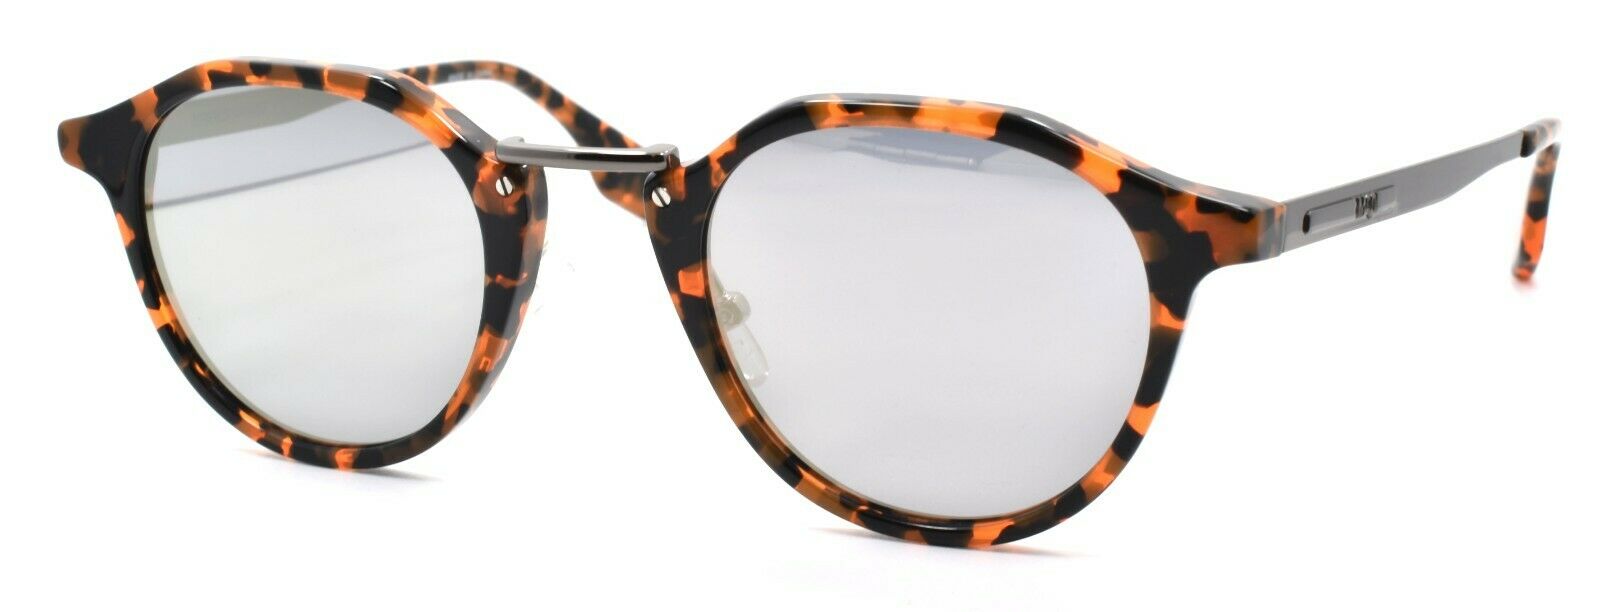 1-McQ Alexander McQueen MQ0036S 005 Unisex Sunglasses Orange Ruthenium / Mirrored-889652031804-IKSpecs